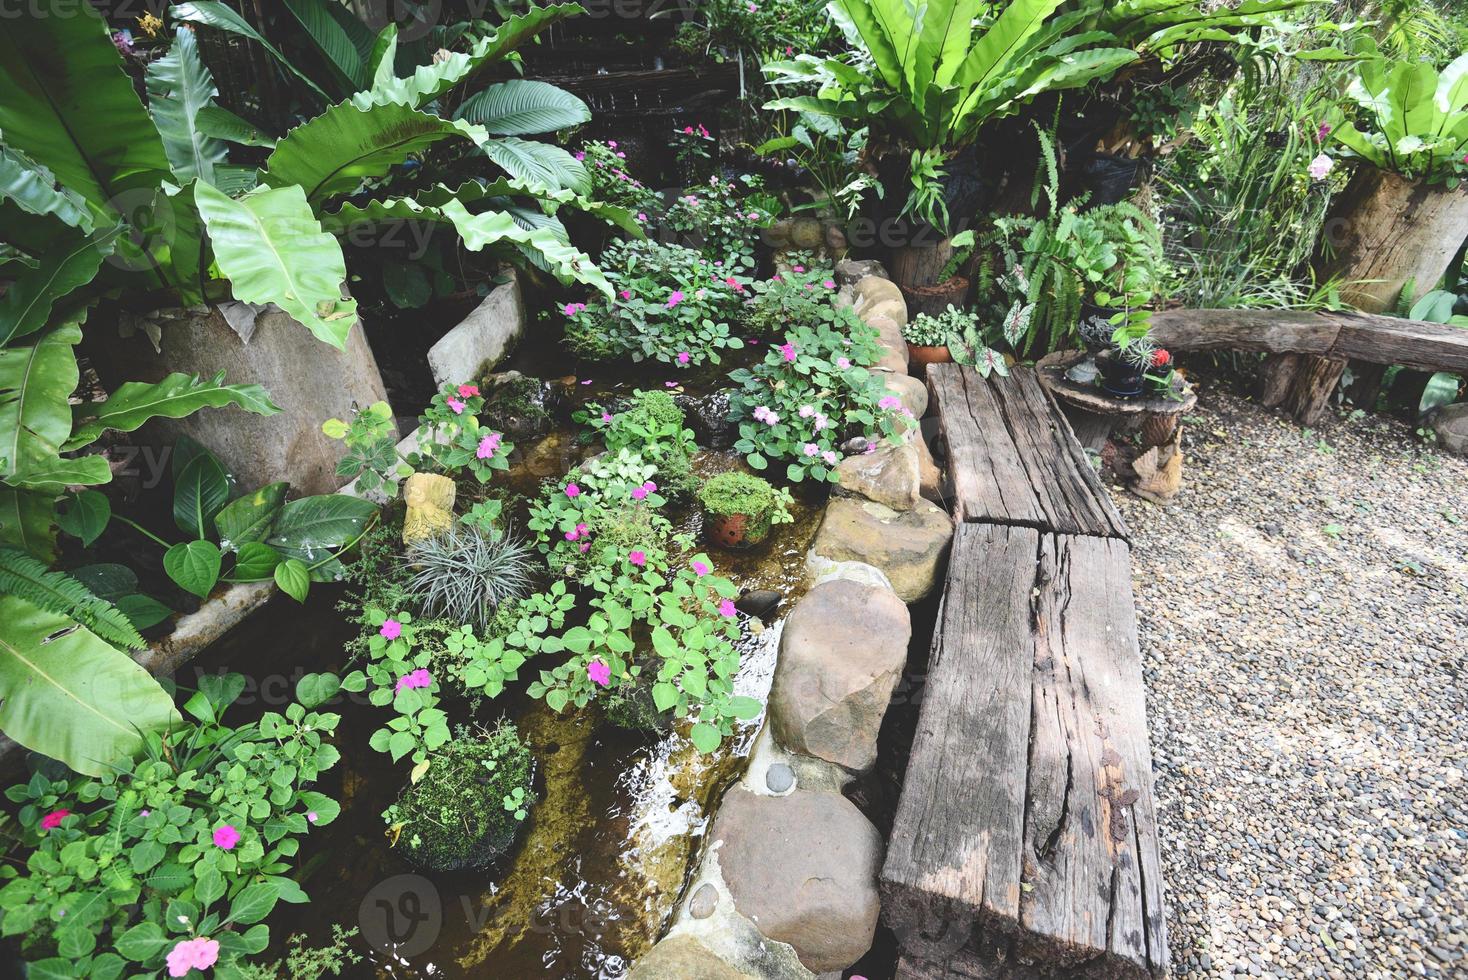 waterstroom of kleine waterval versieren voortuin - natuurtuin met plantenboombloemen in de aziatische met een vijverpark foto